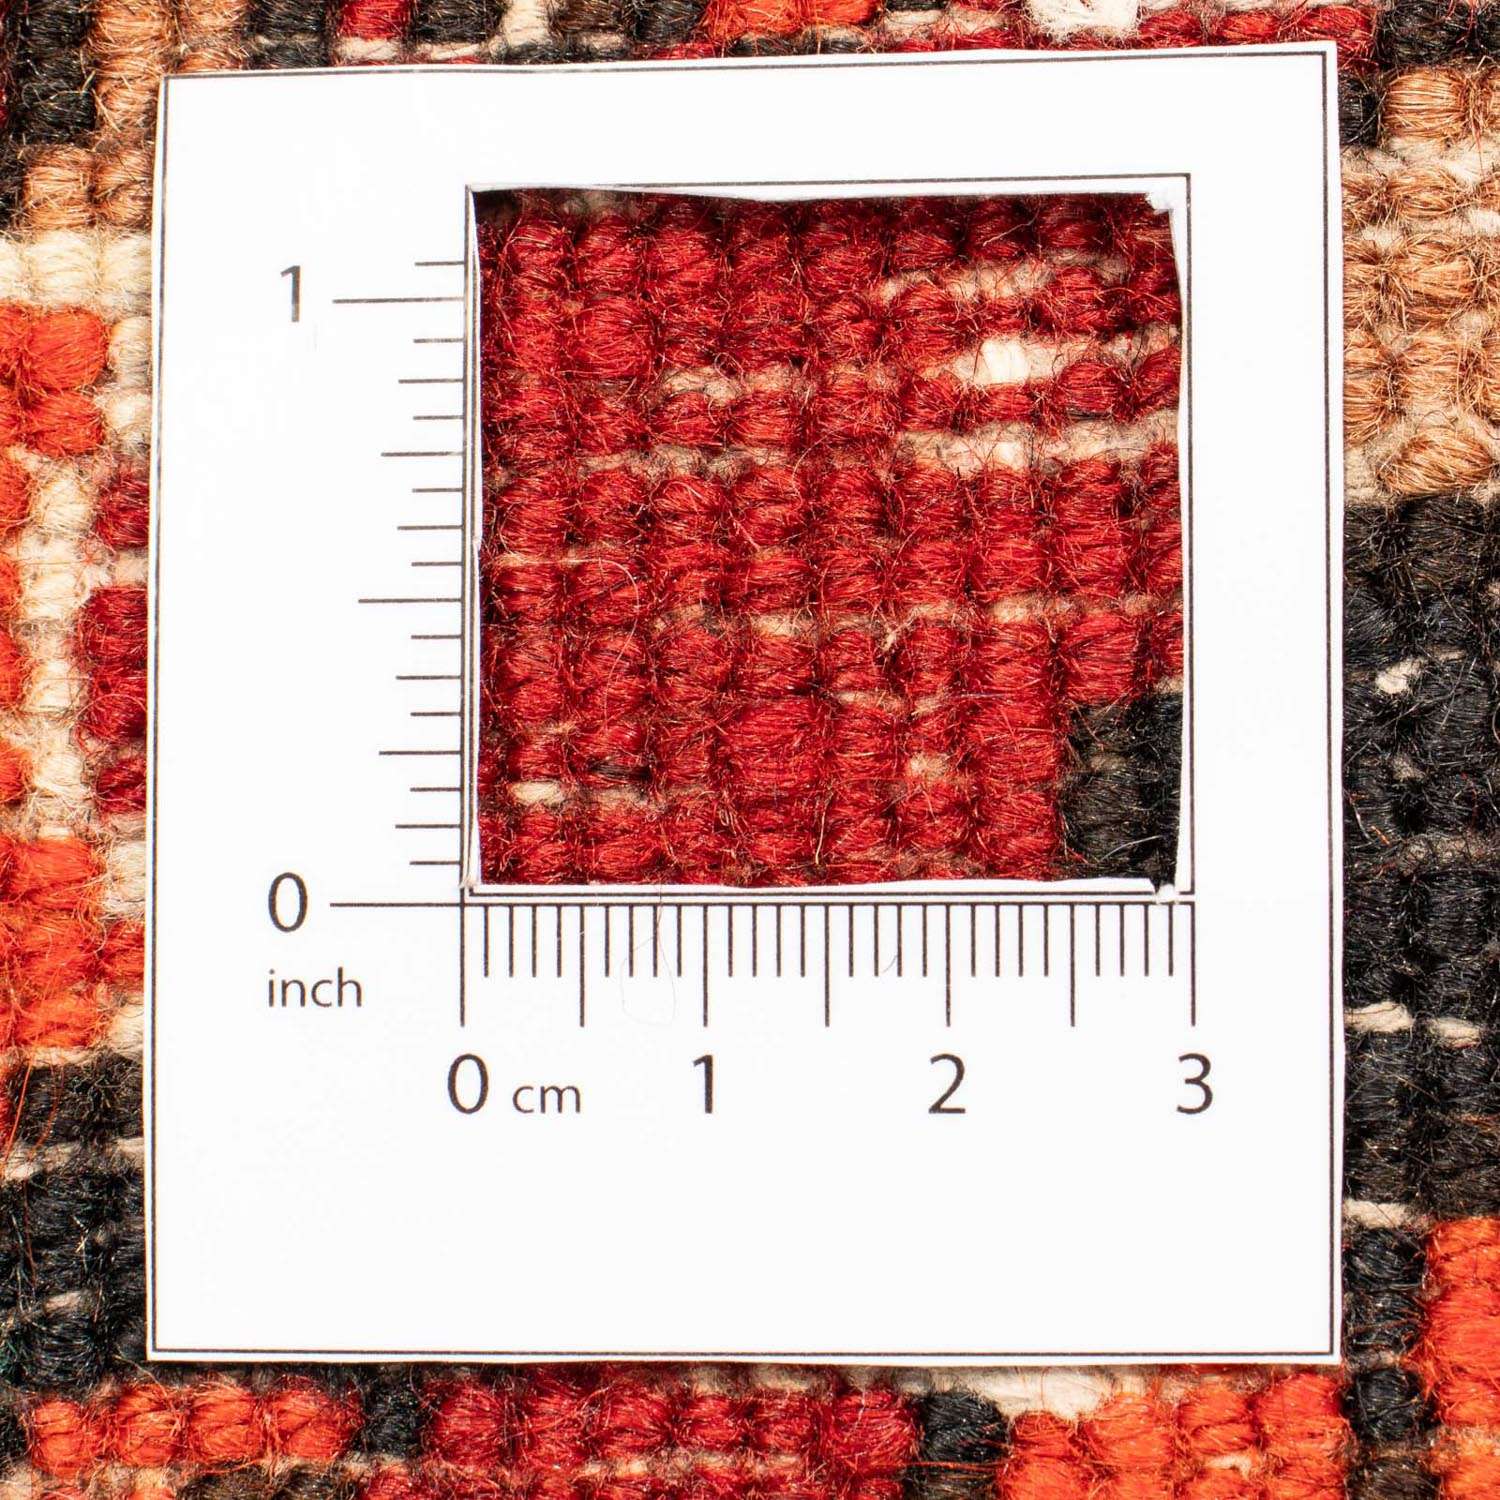 Persisk teppe - Nomadisk - 295 x 202 cm - mørk rød